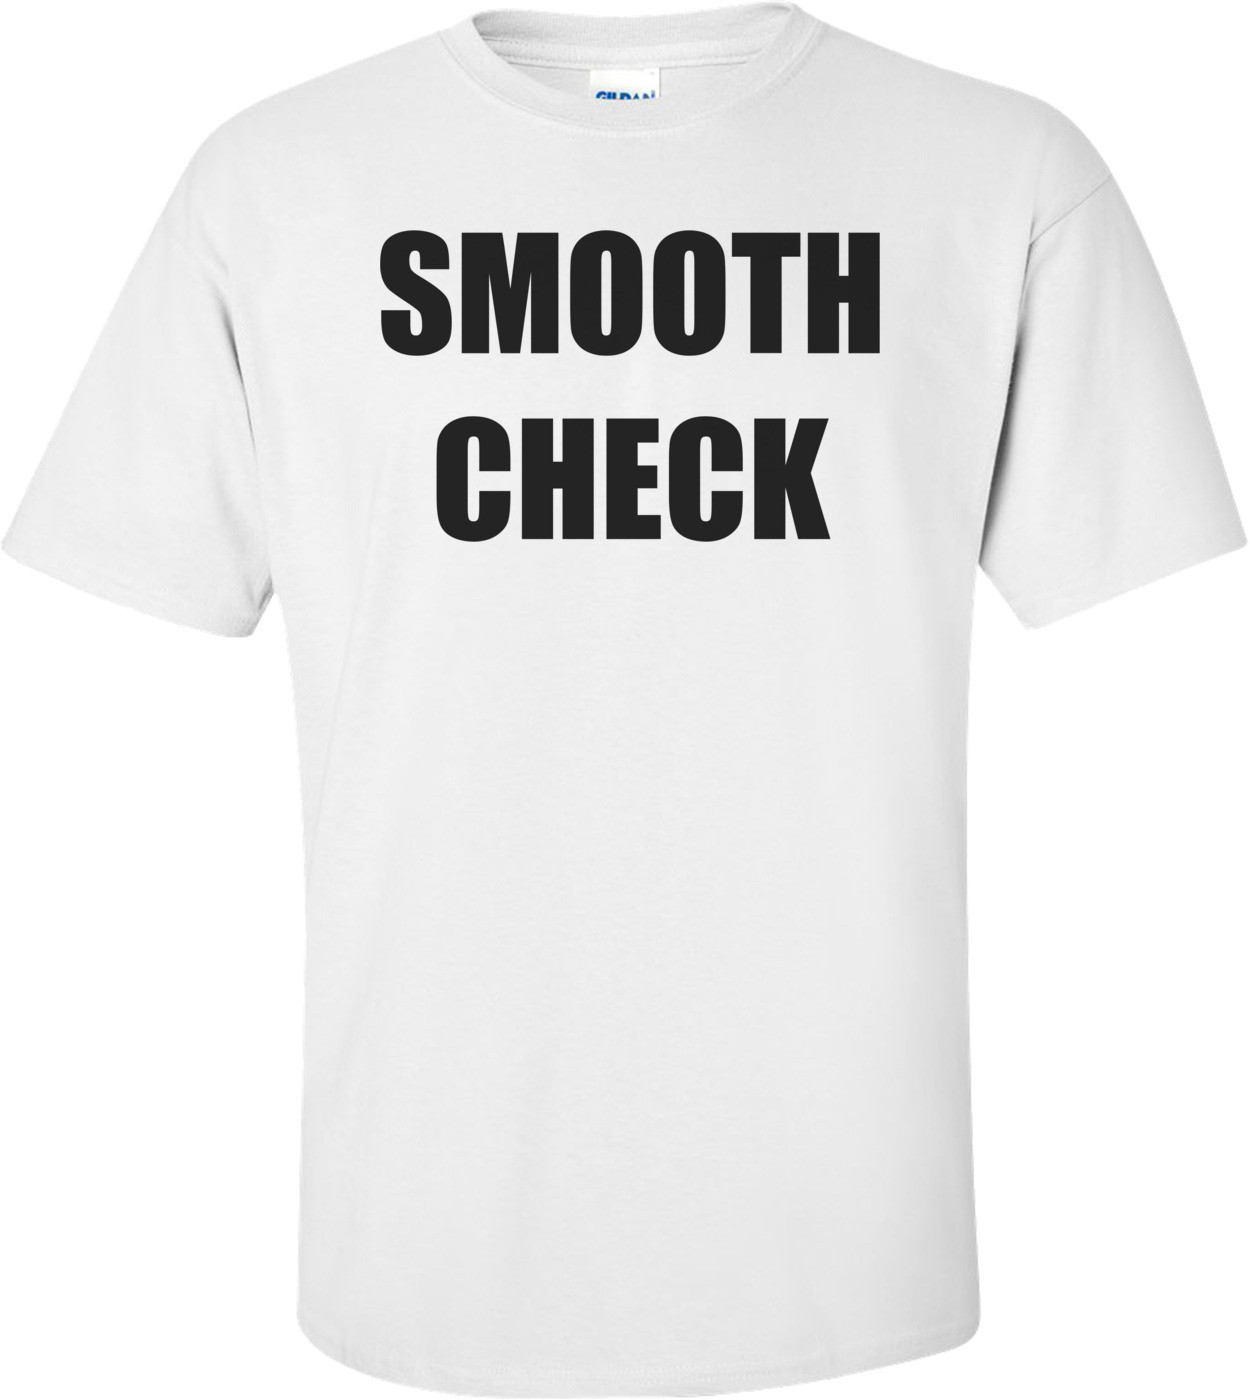 SMOOTH CHECK Shirt